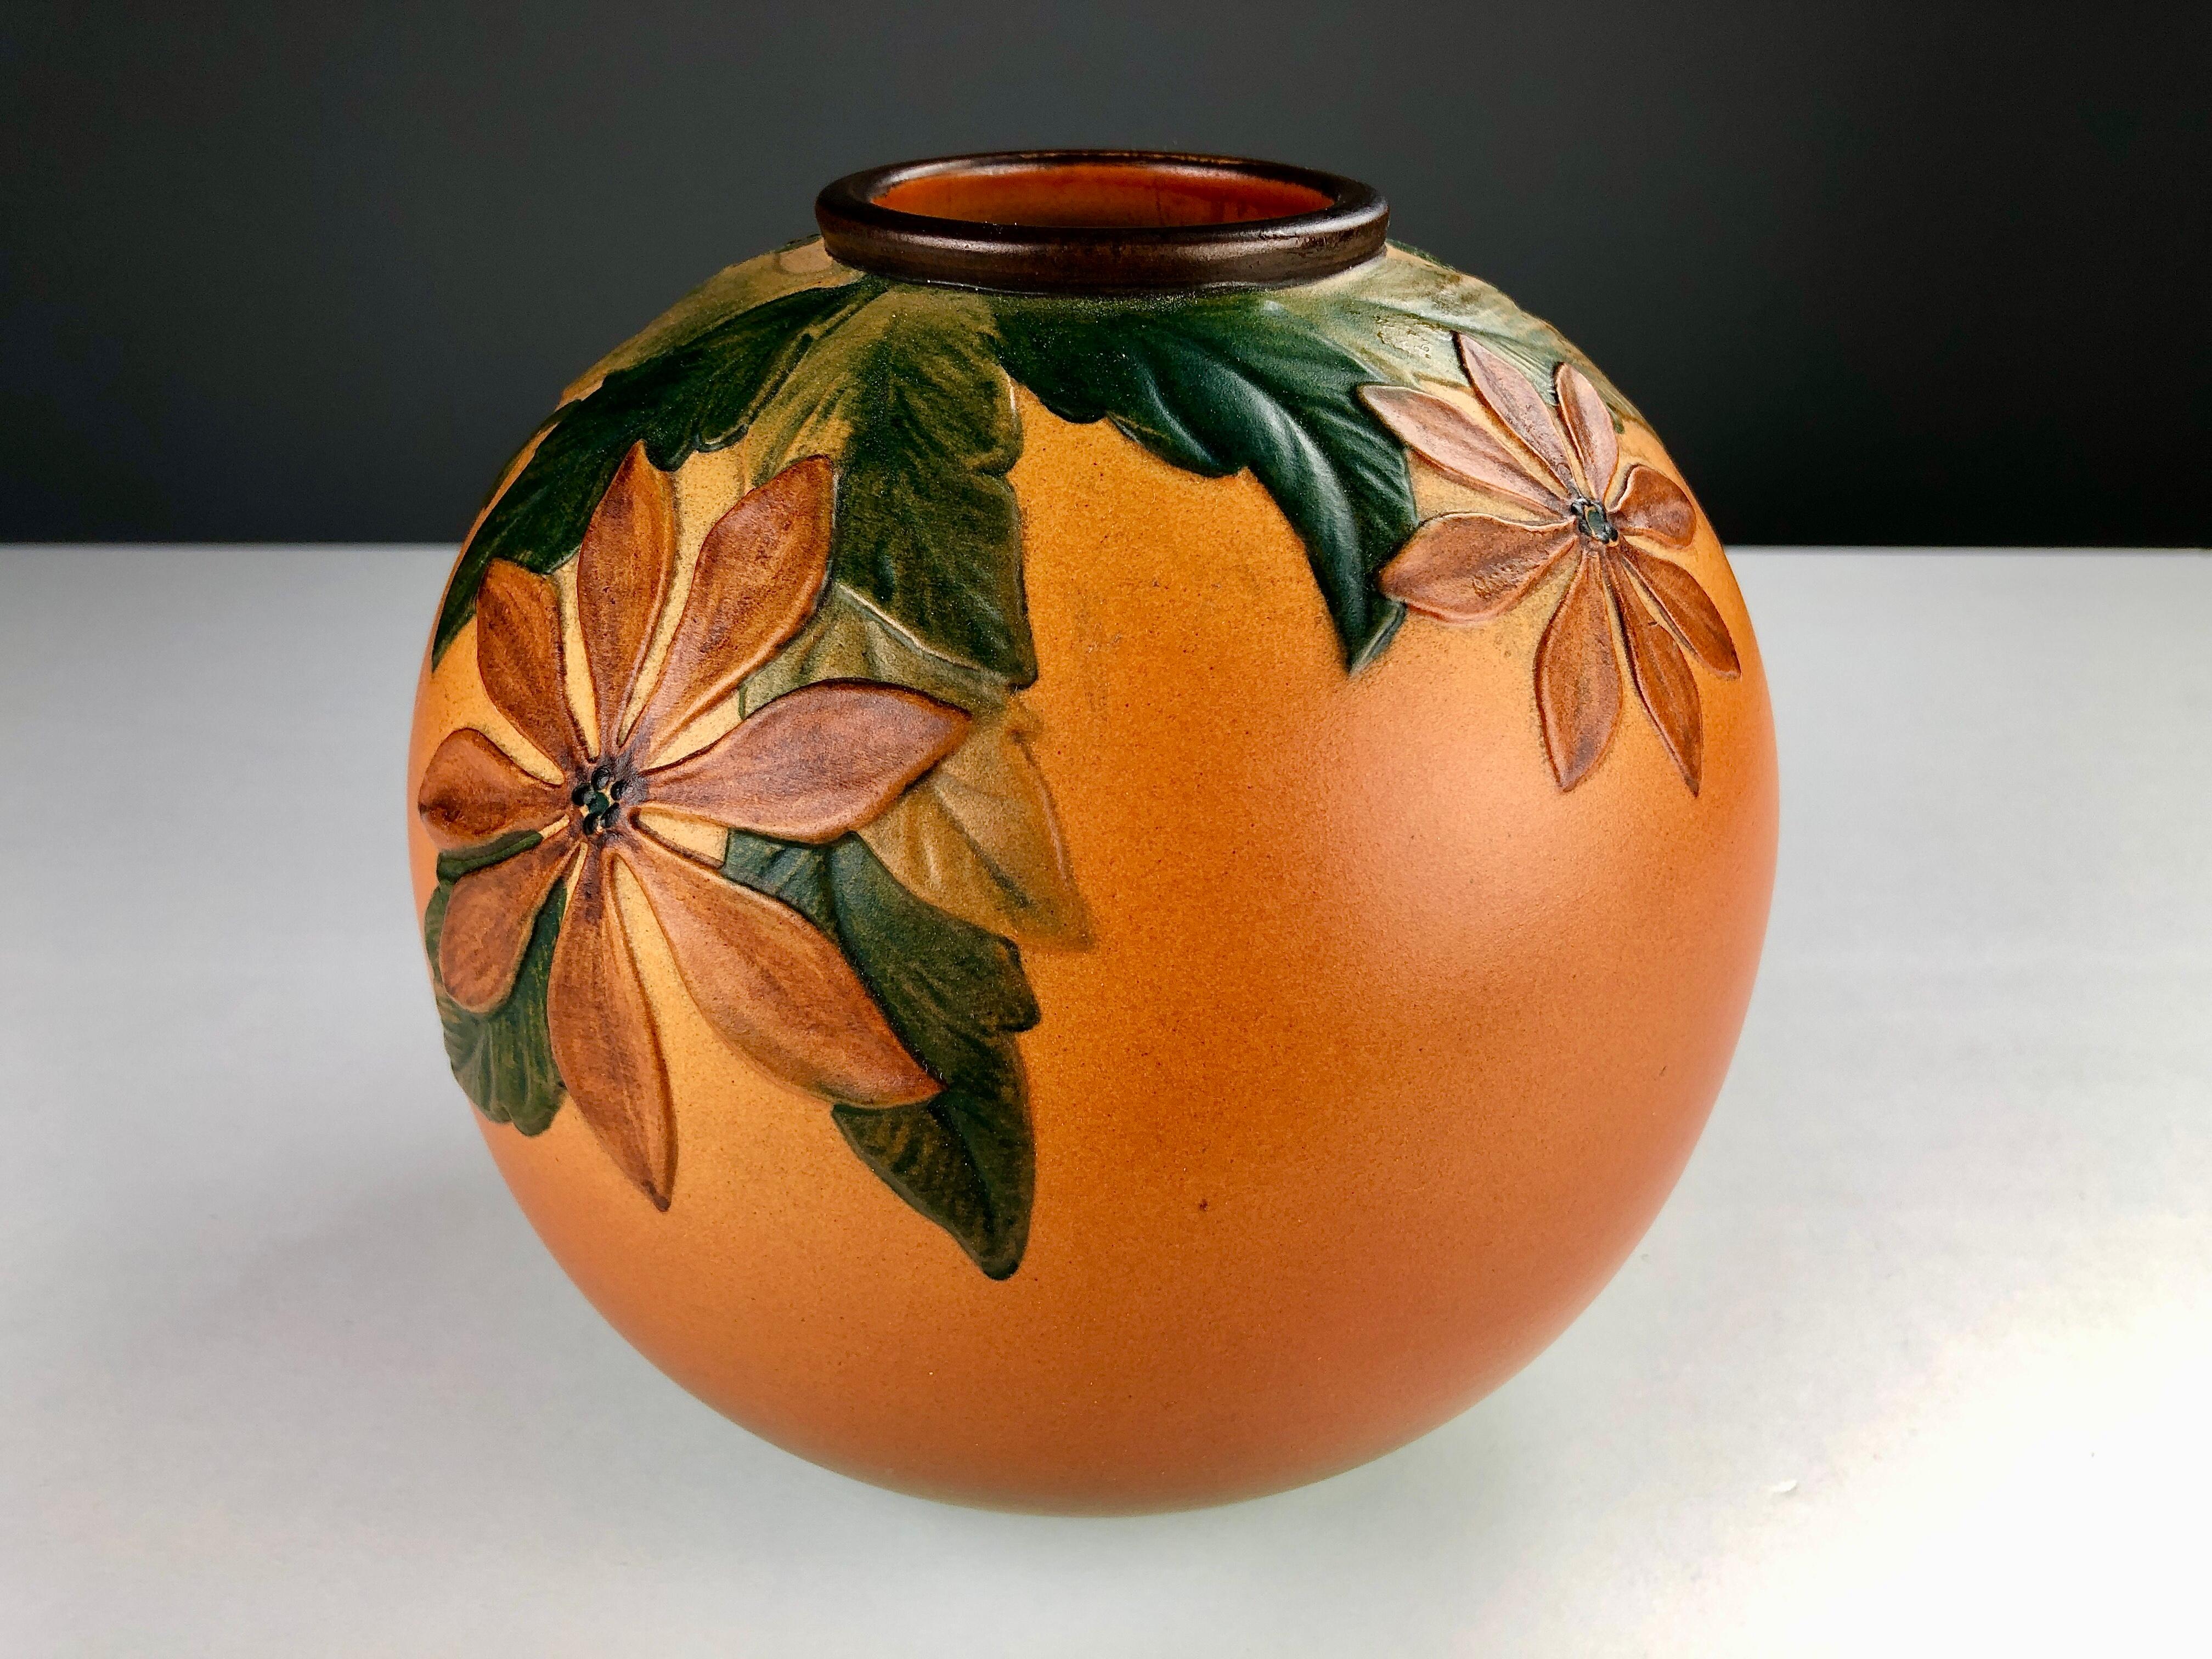 Vase artisanal danois Art nouveau décoré de fleurs par P. Ipsen Enke

Ce vase Art nouveau a été conçu par Axel Sørensen en 1939 et présente des fleurs et des feuilles vivantes très bien réalisées. Les vases ont été fabriqués à la main, d'où de